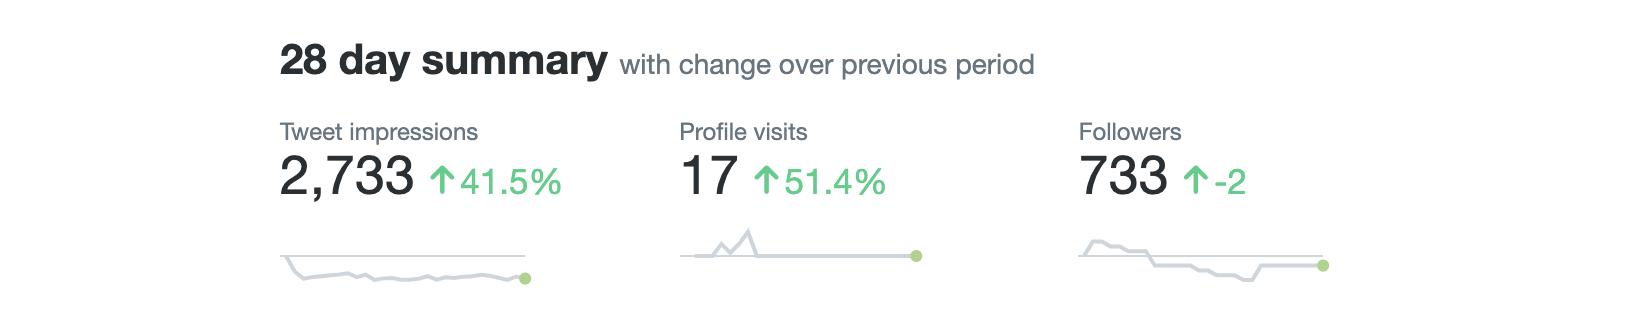 twitter marketing twitter analytics dashboard 28 days